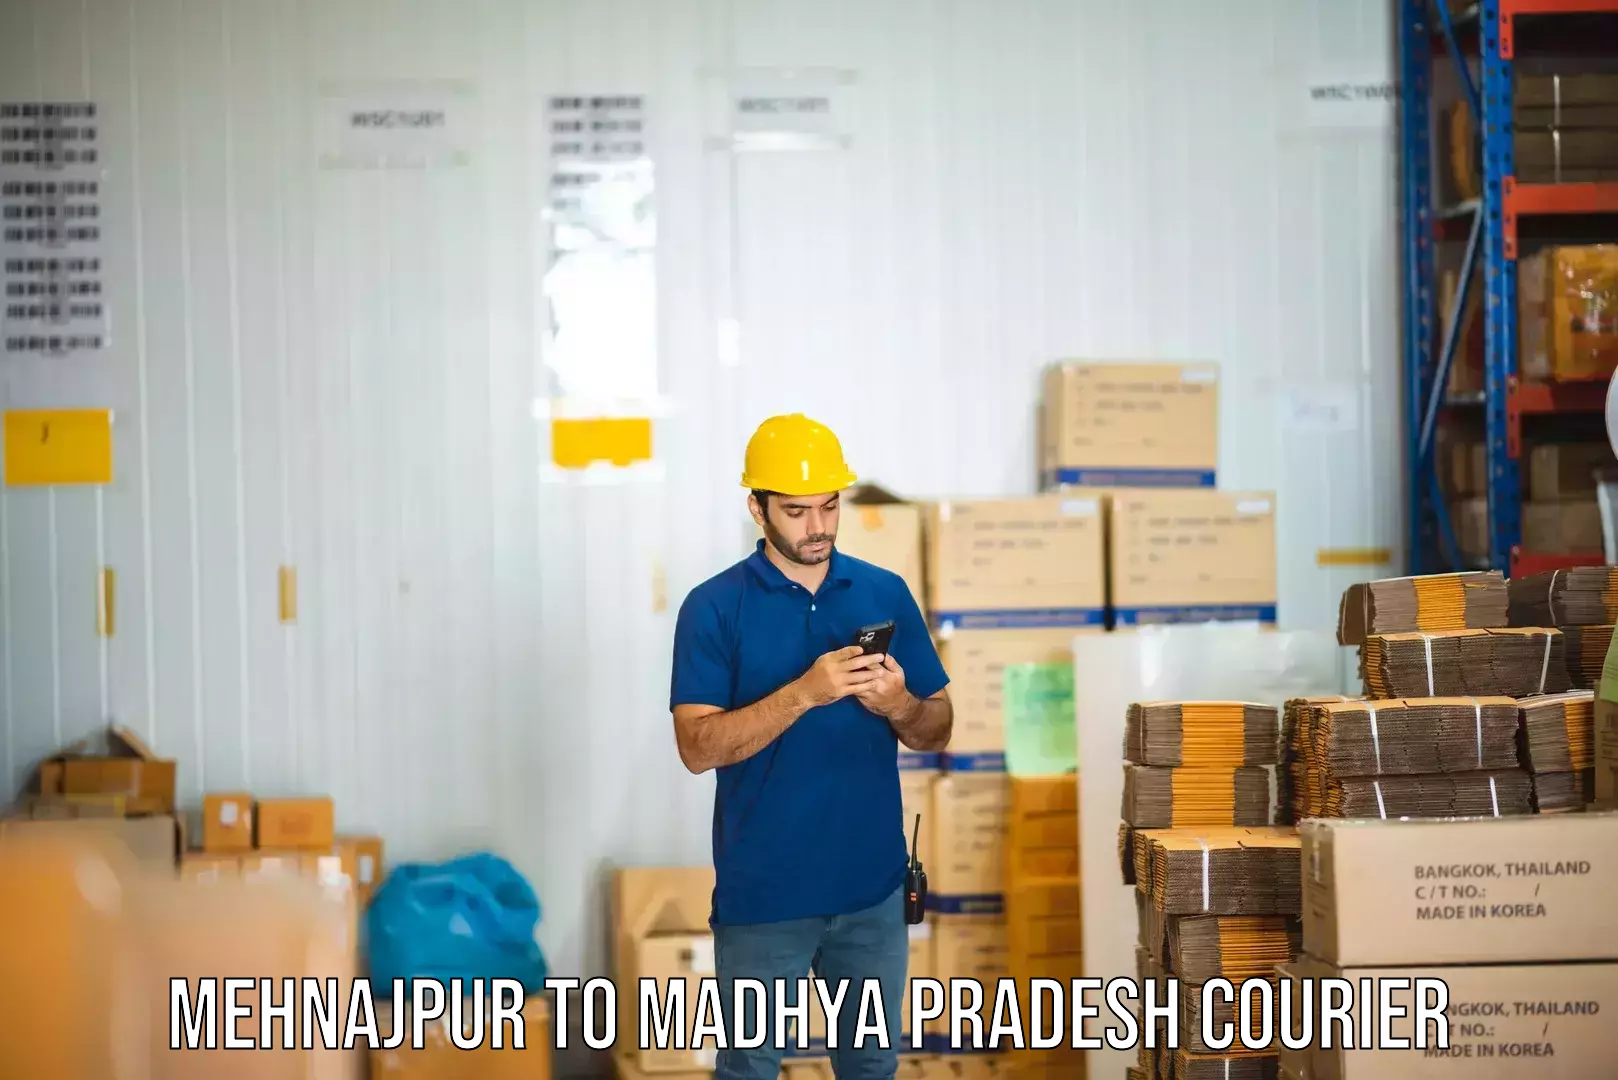 Cargo delivery service Mehnajpur to Ganj Basoda